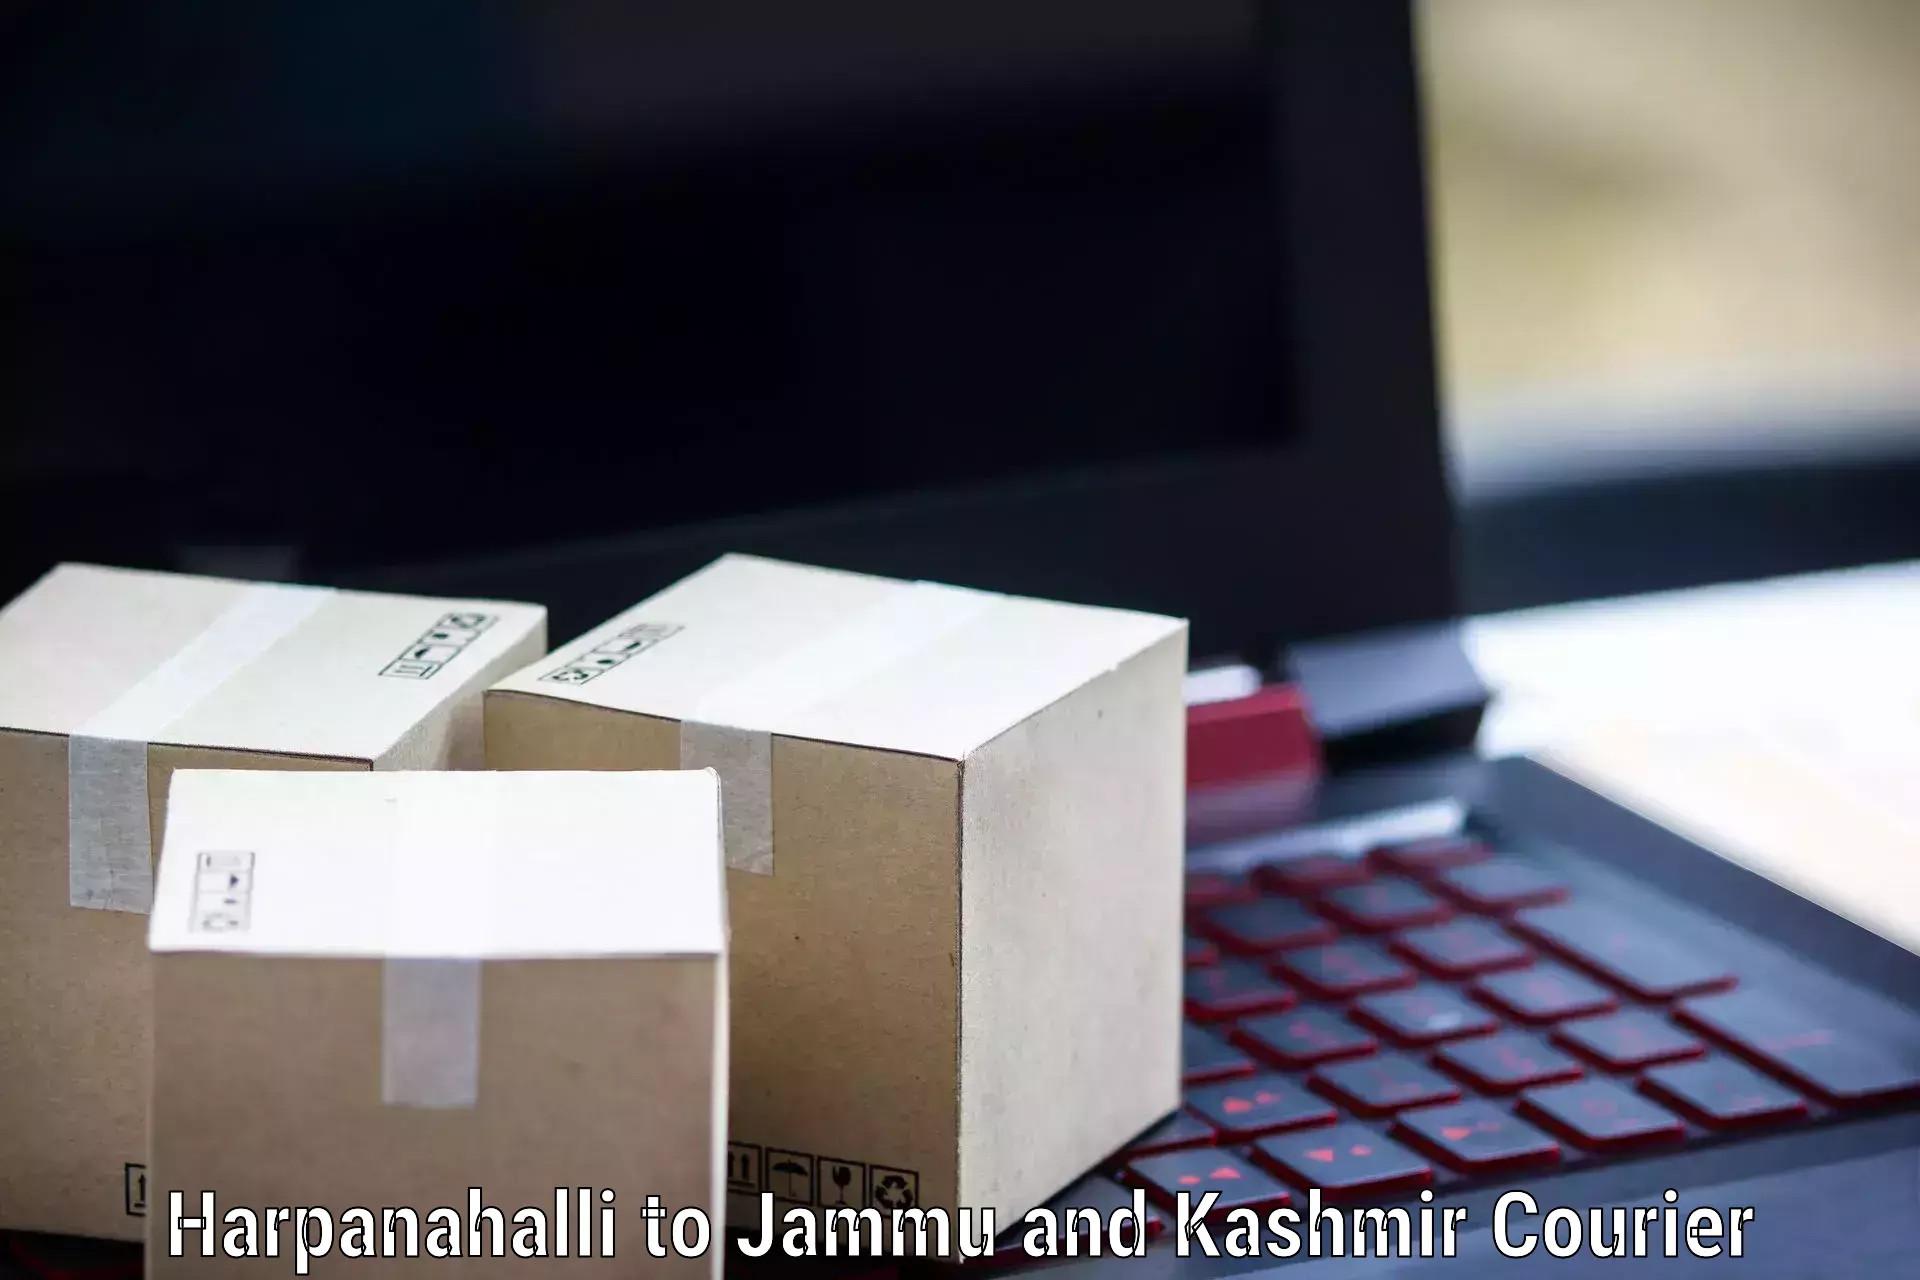 24/7 shipping services Harpanahalli to Srinagar Kashmir